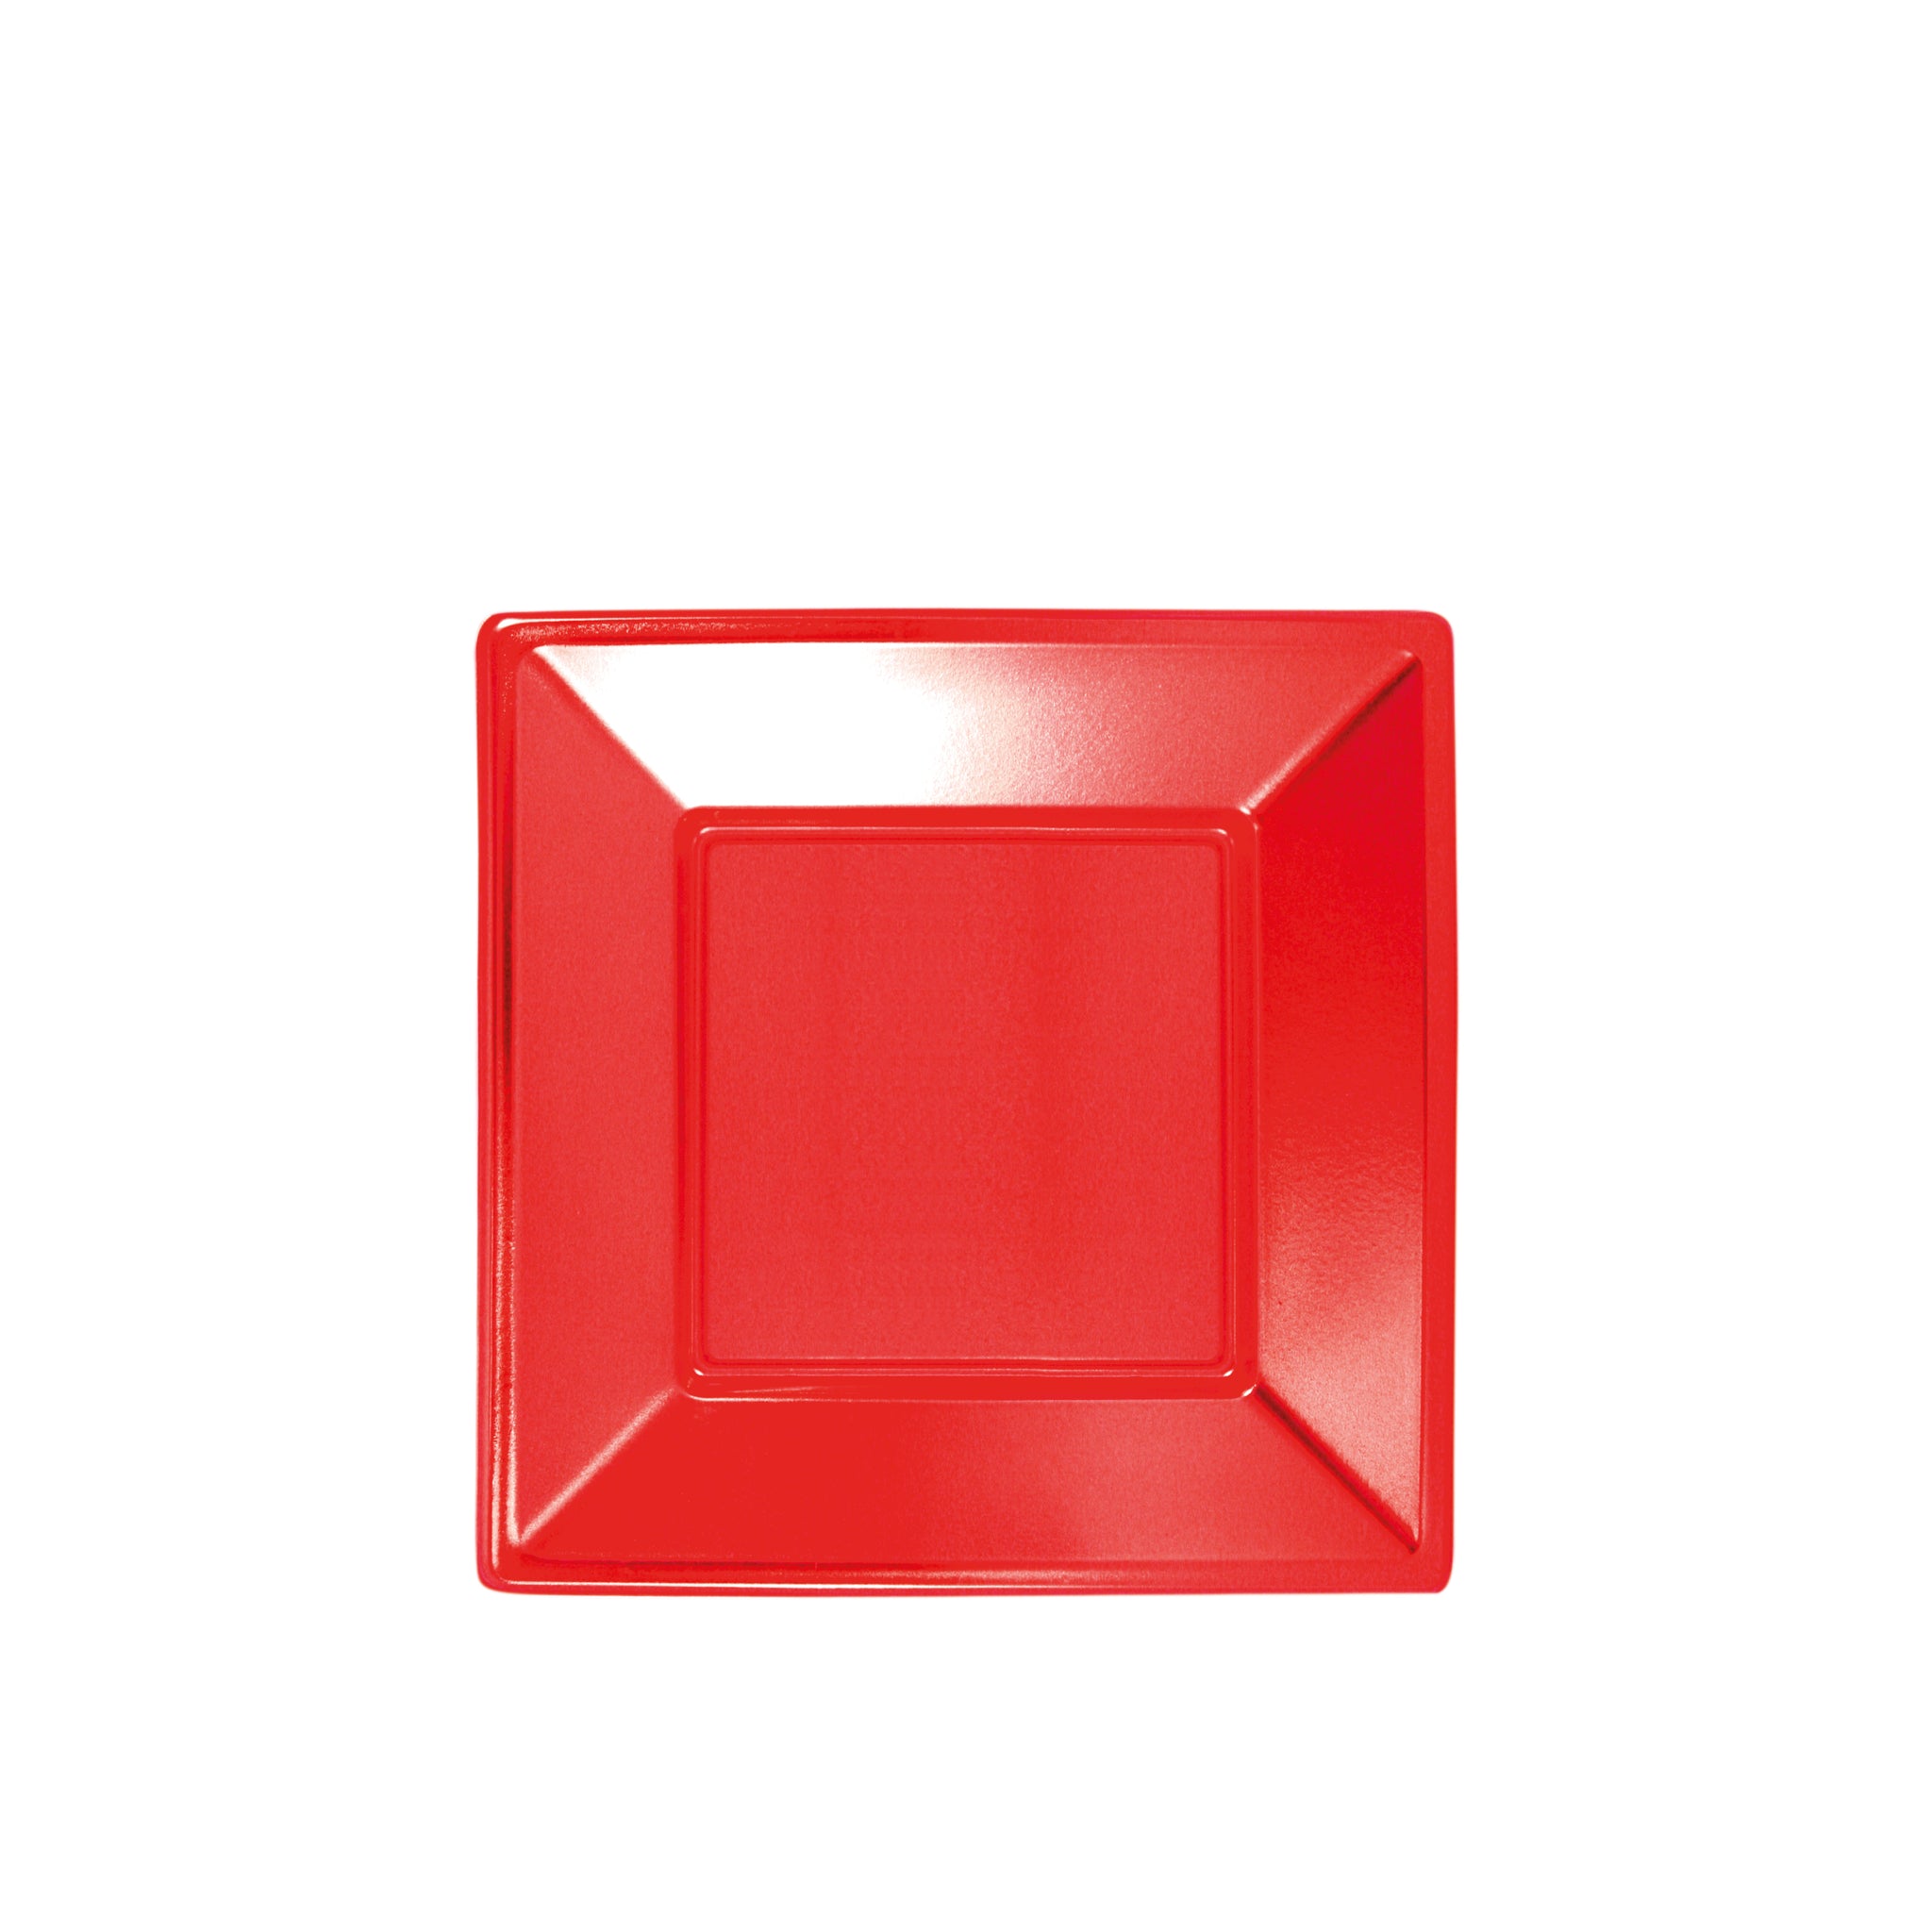 Plato Plástico Llano Cuadraro 23 x 23 cm Rojo